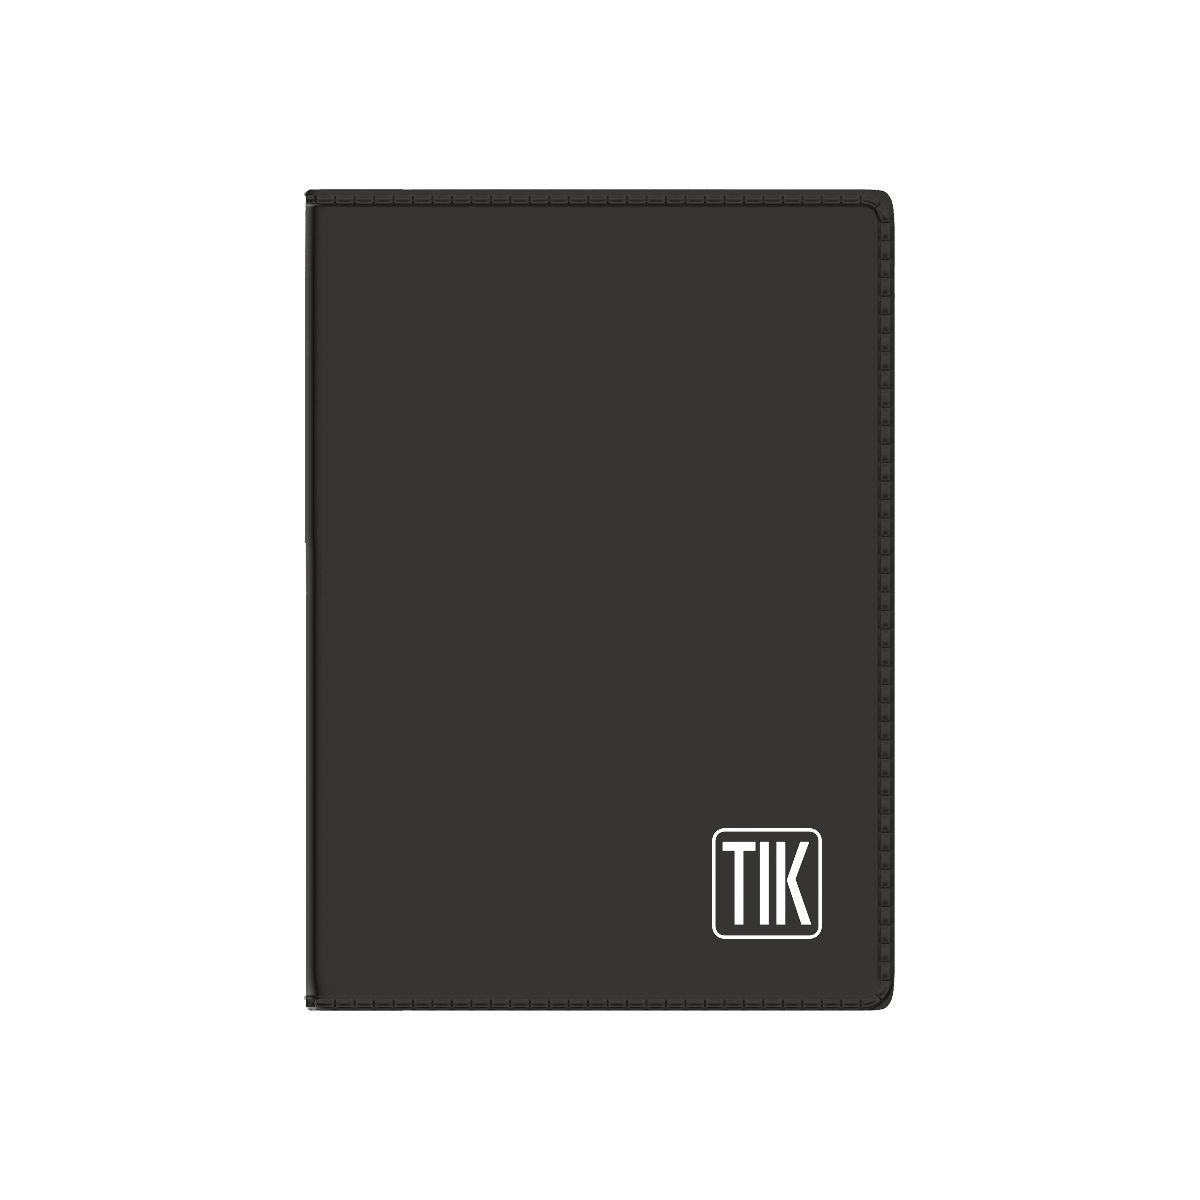 Kalendarz książkowy (terminarz) Wydawnictwo Telegraph TIK kieszonkowy 82mm x 120mm (K1)